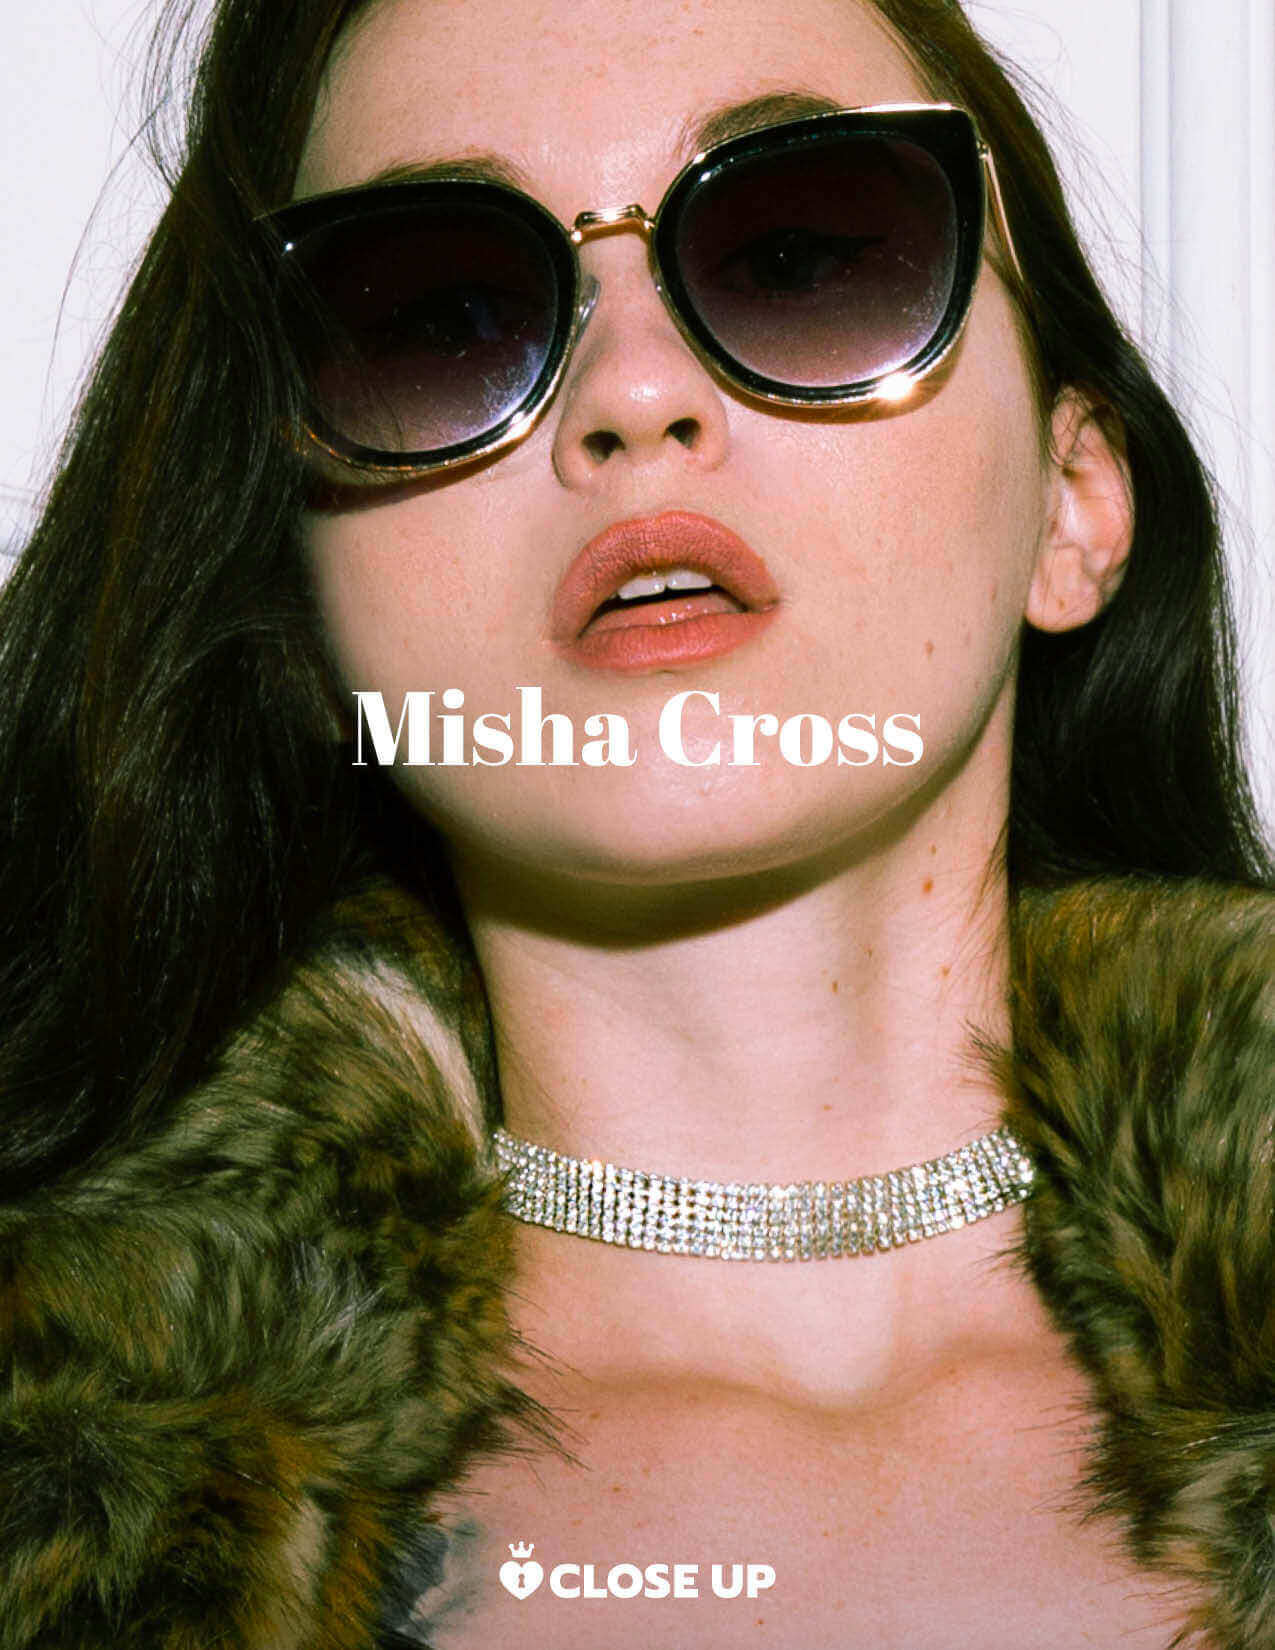 Misha Cross wird in der 'MV Close Up'-Fotoserie gezeigt